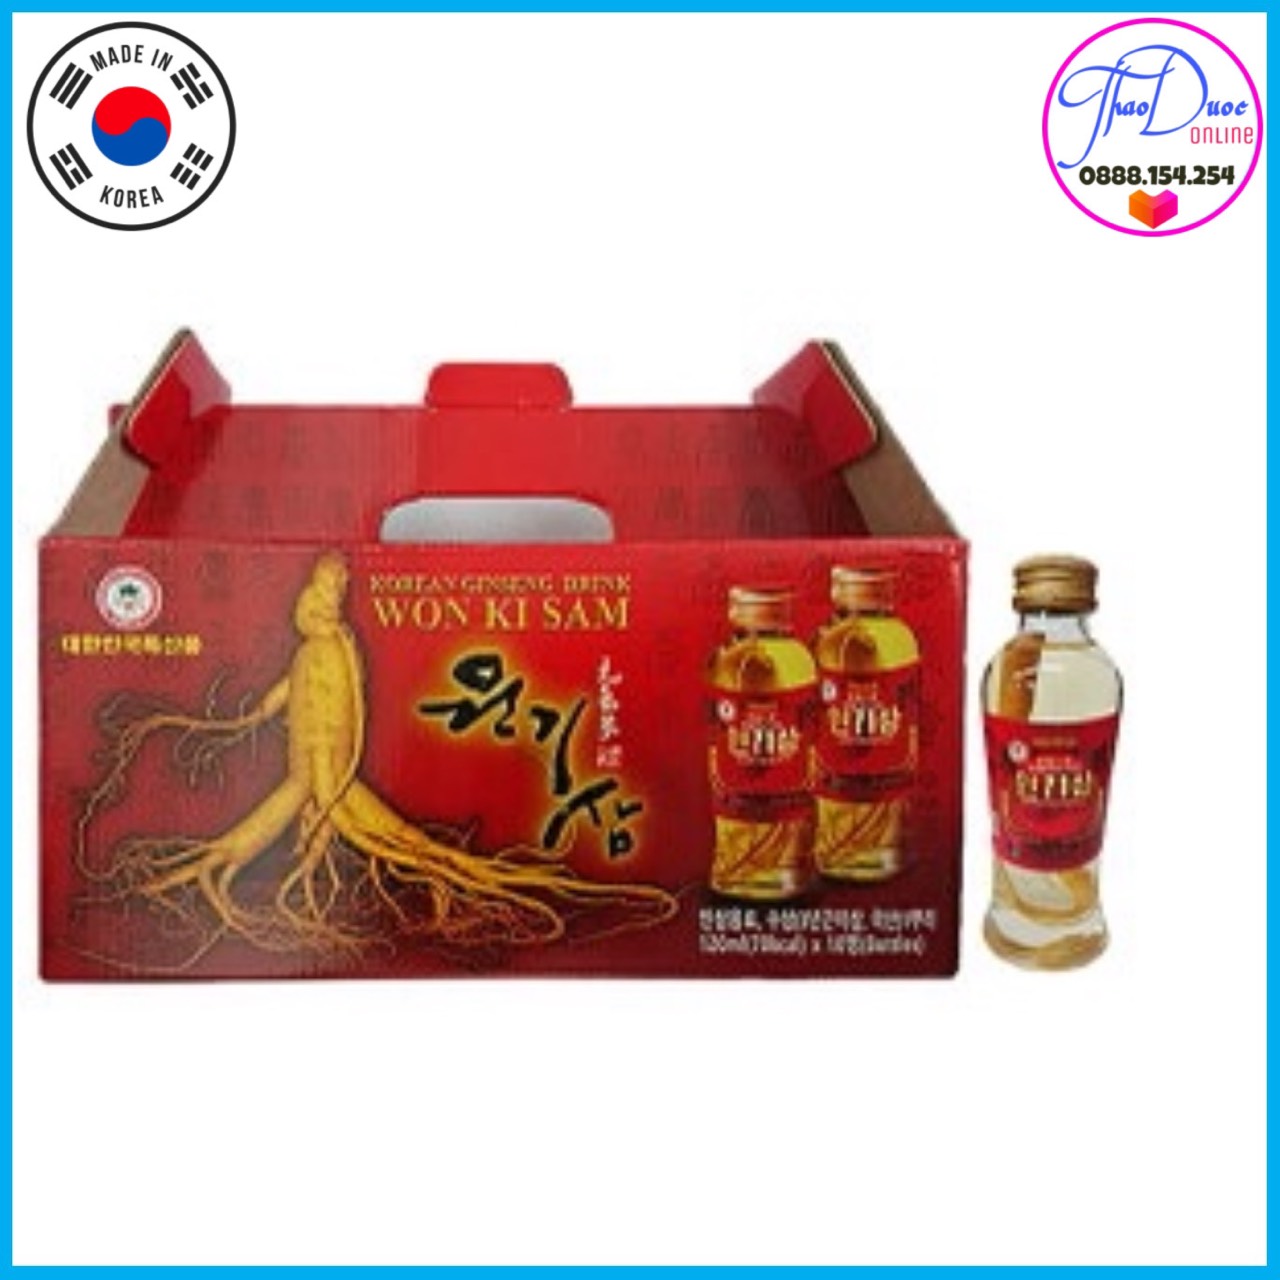 Hộp 10 chai Nước uống tăng lực nguyên củ sâm Won Ki Sam Korean Ginseng